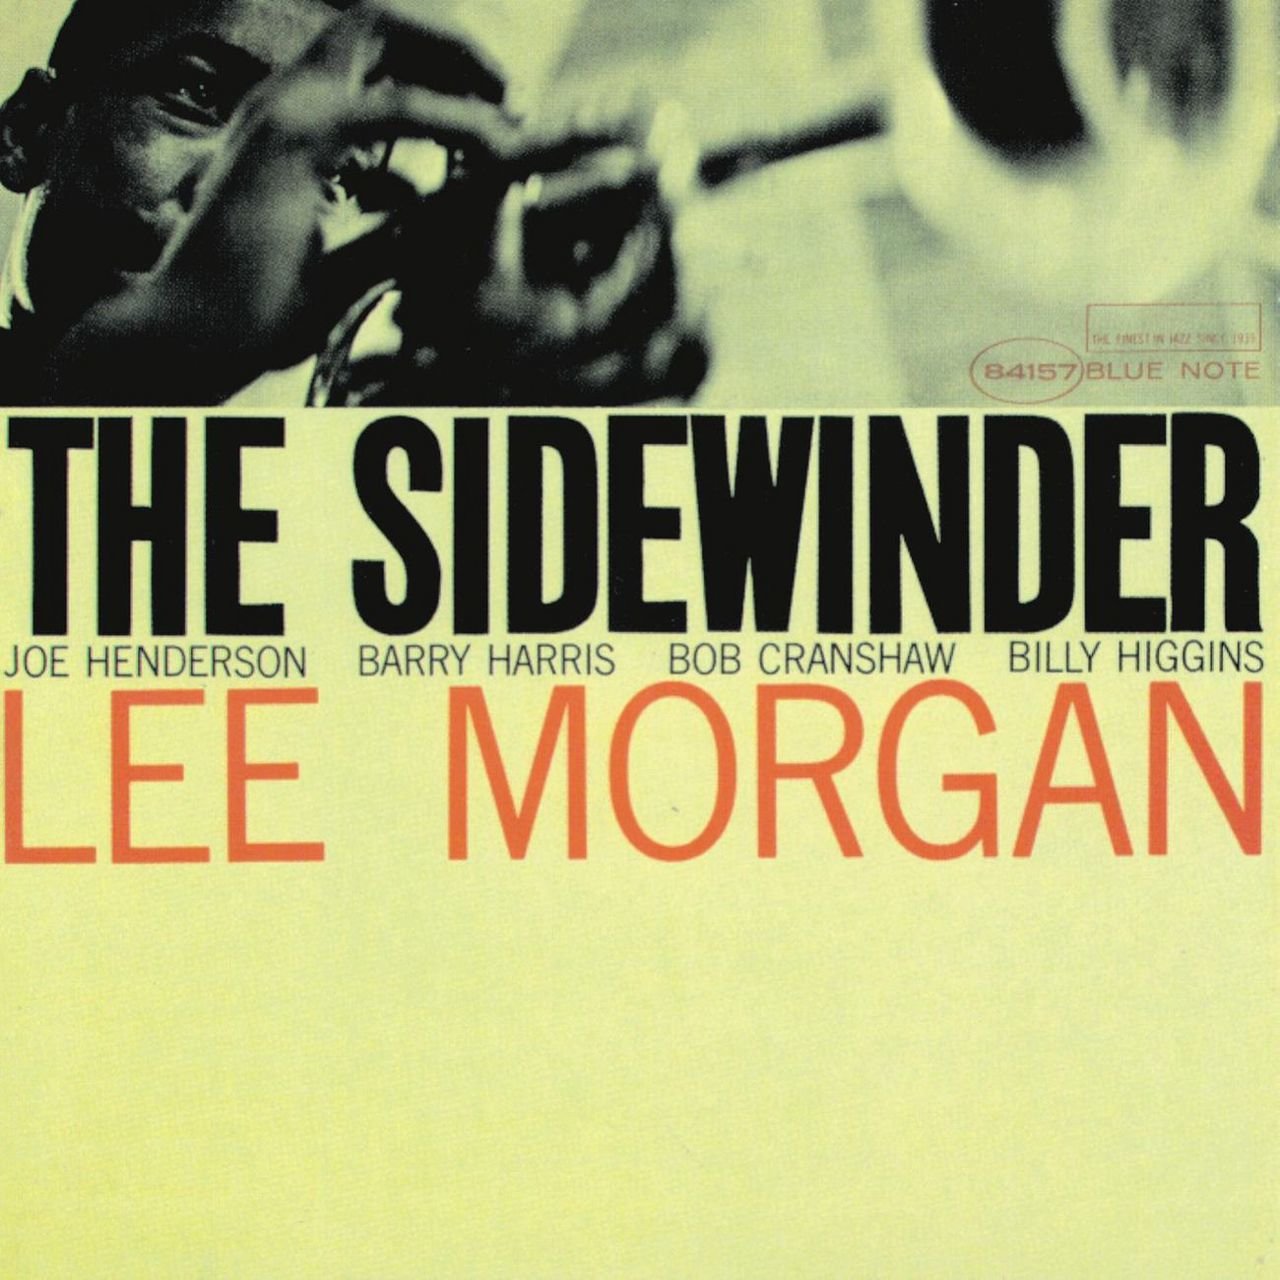 The Sidewinder (The Rudy Van Gelder Edition) [1963]